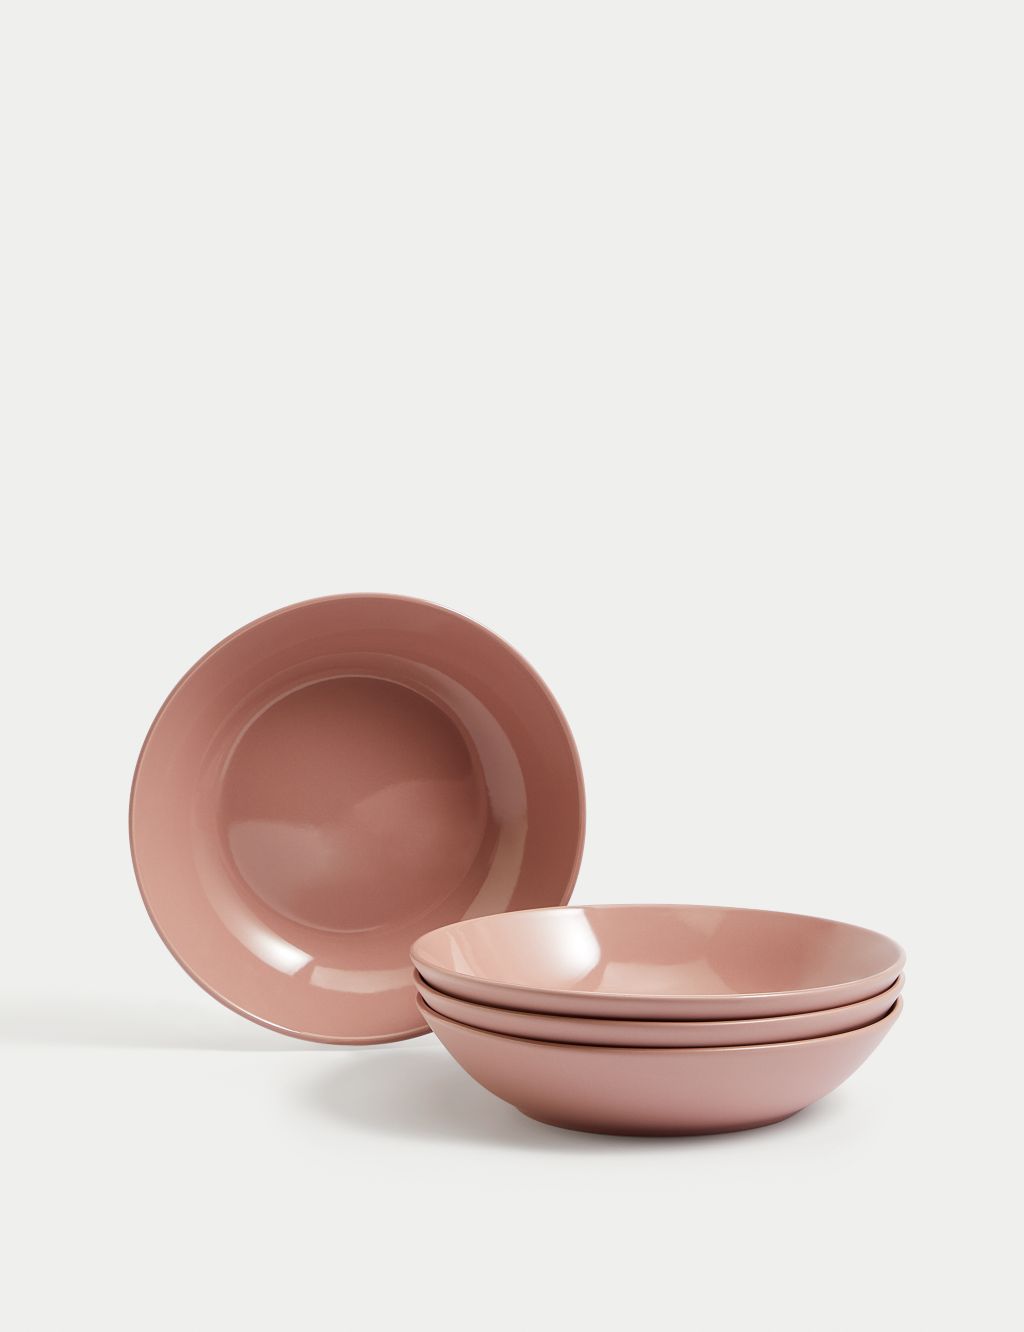 Set of 4 Everyday Stoneware Pasta Bowls image 1